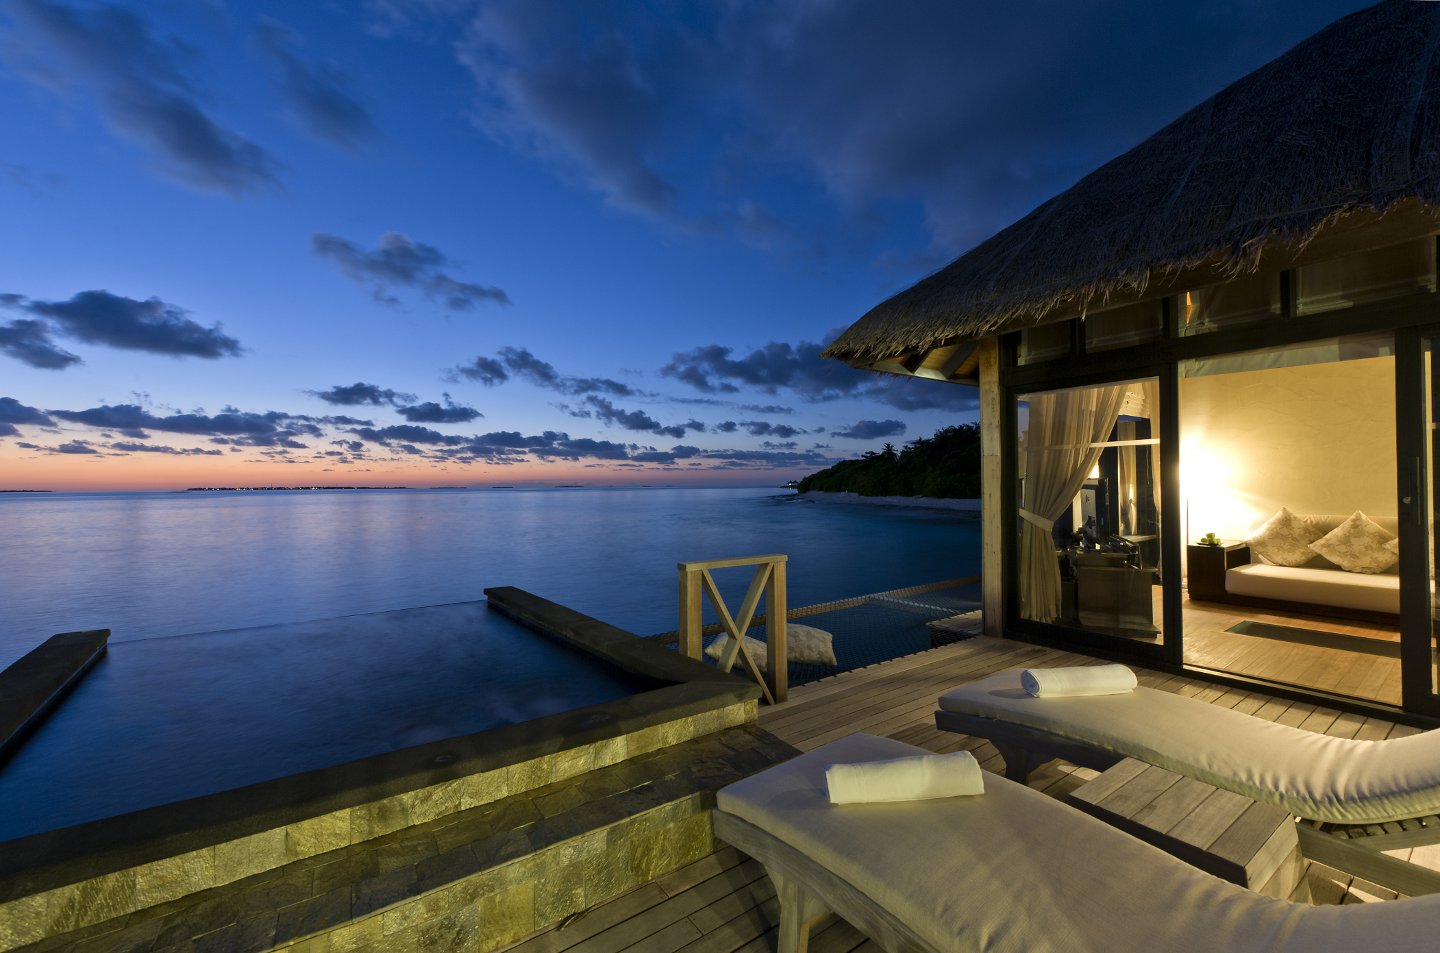 Iruveli A Serene Beach House in Maldives | Architecture & Design